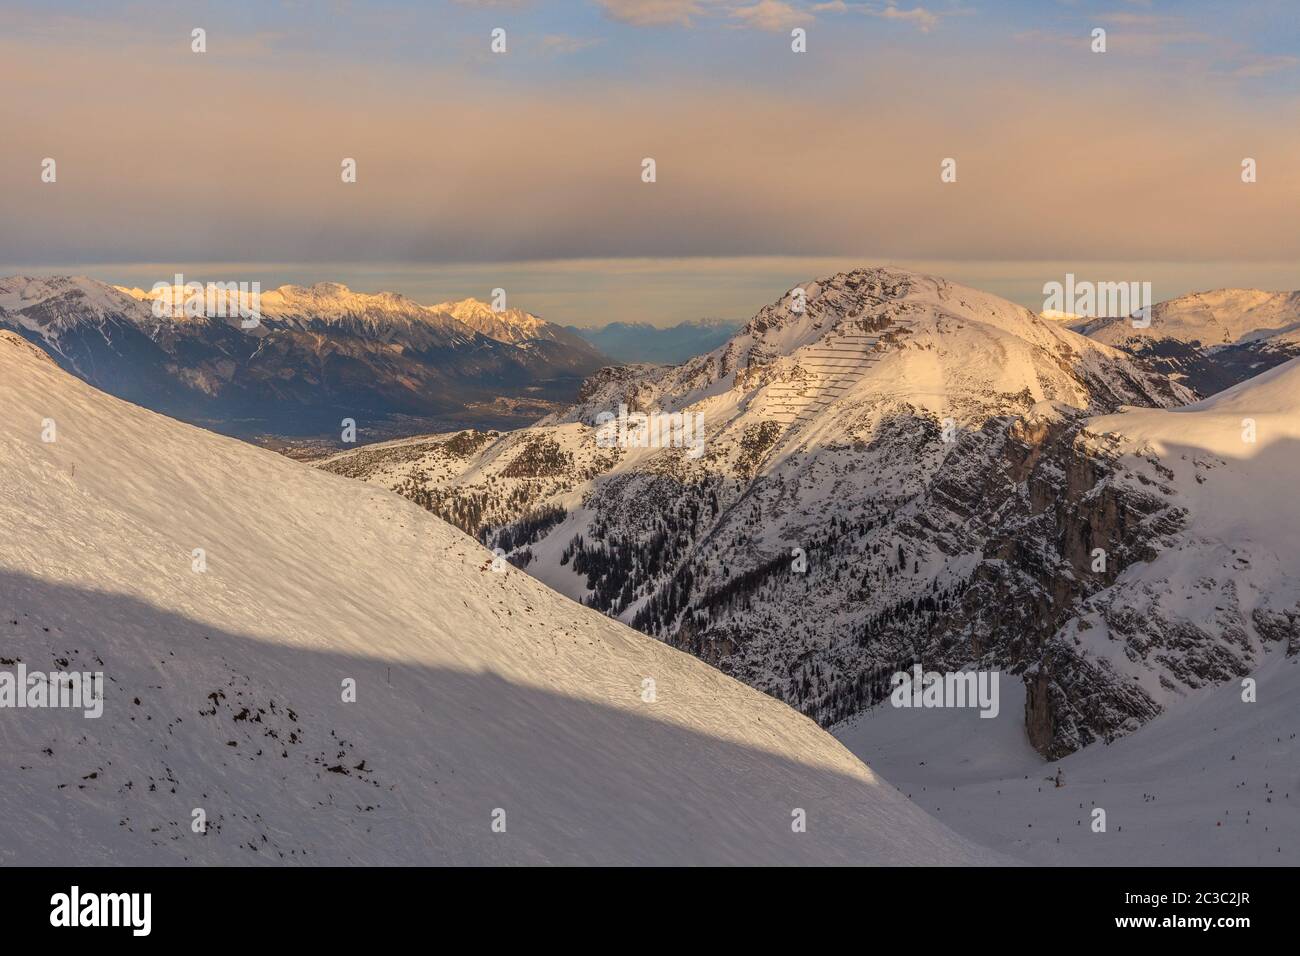 view of the ski region Axamer Lizum, Austria Stock Photo